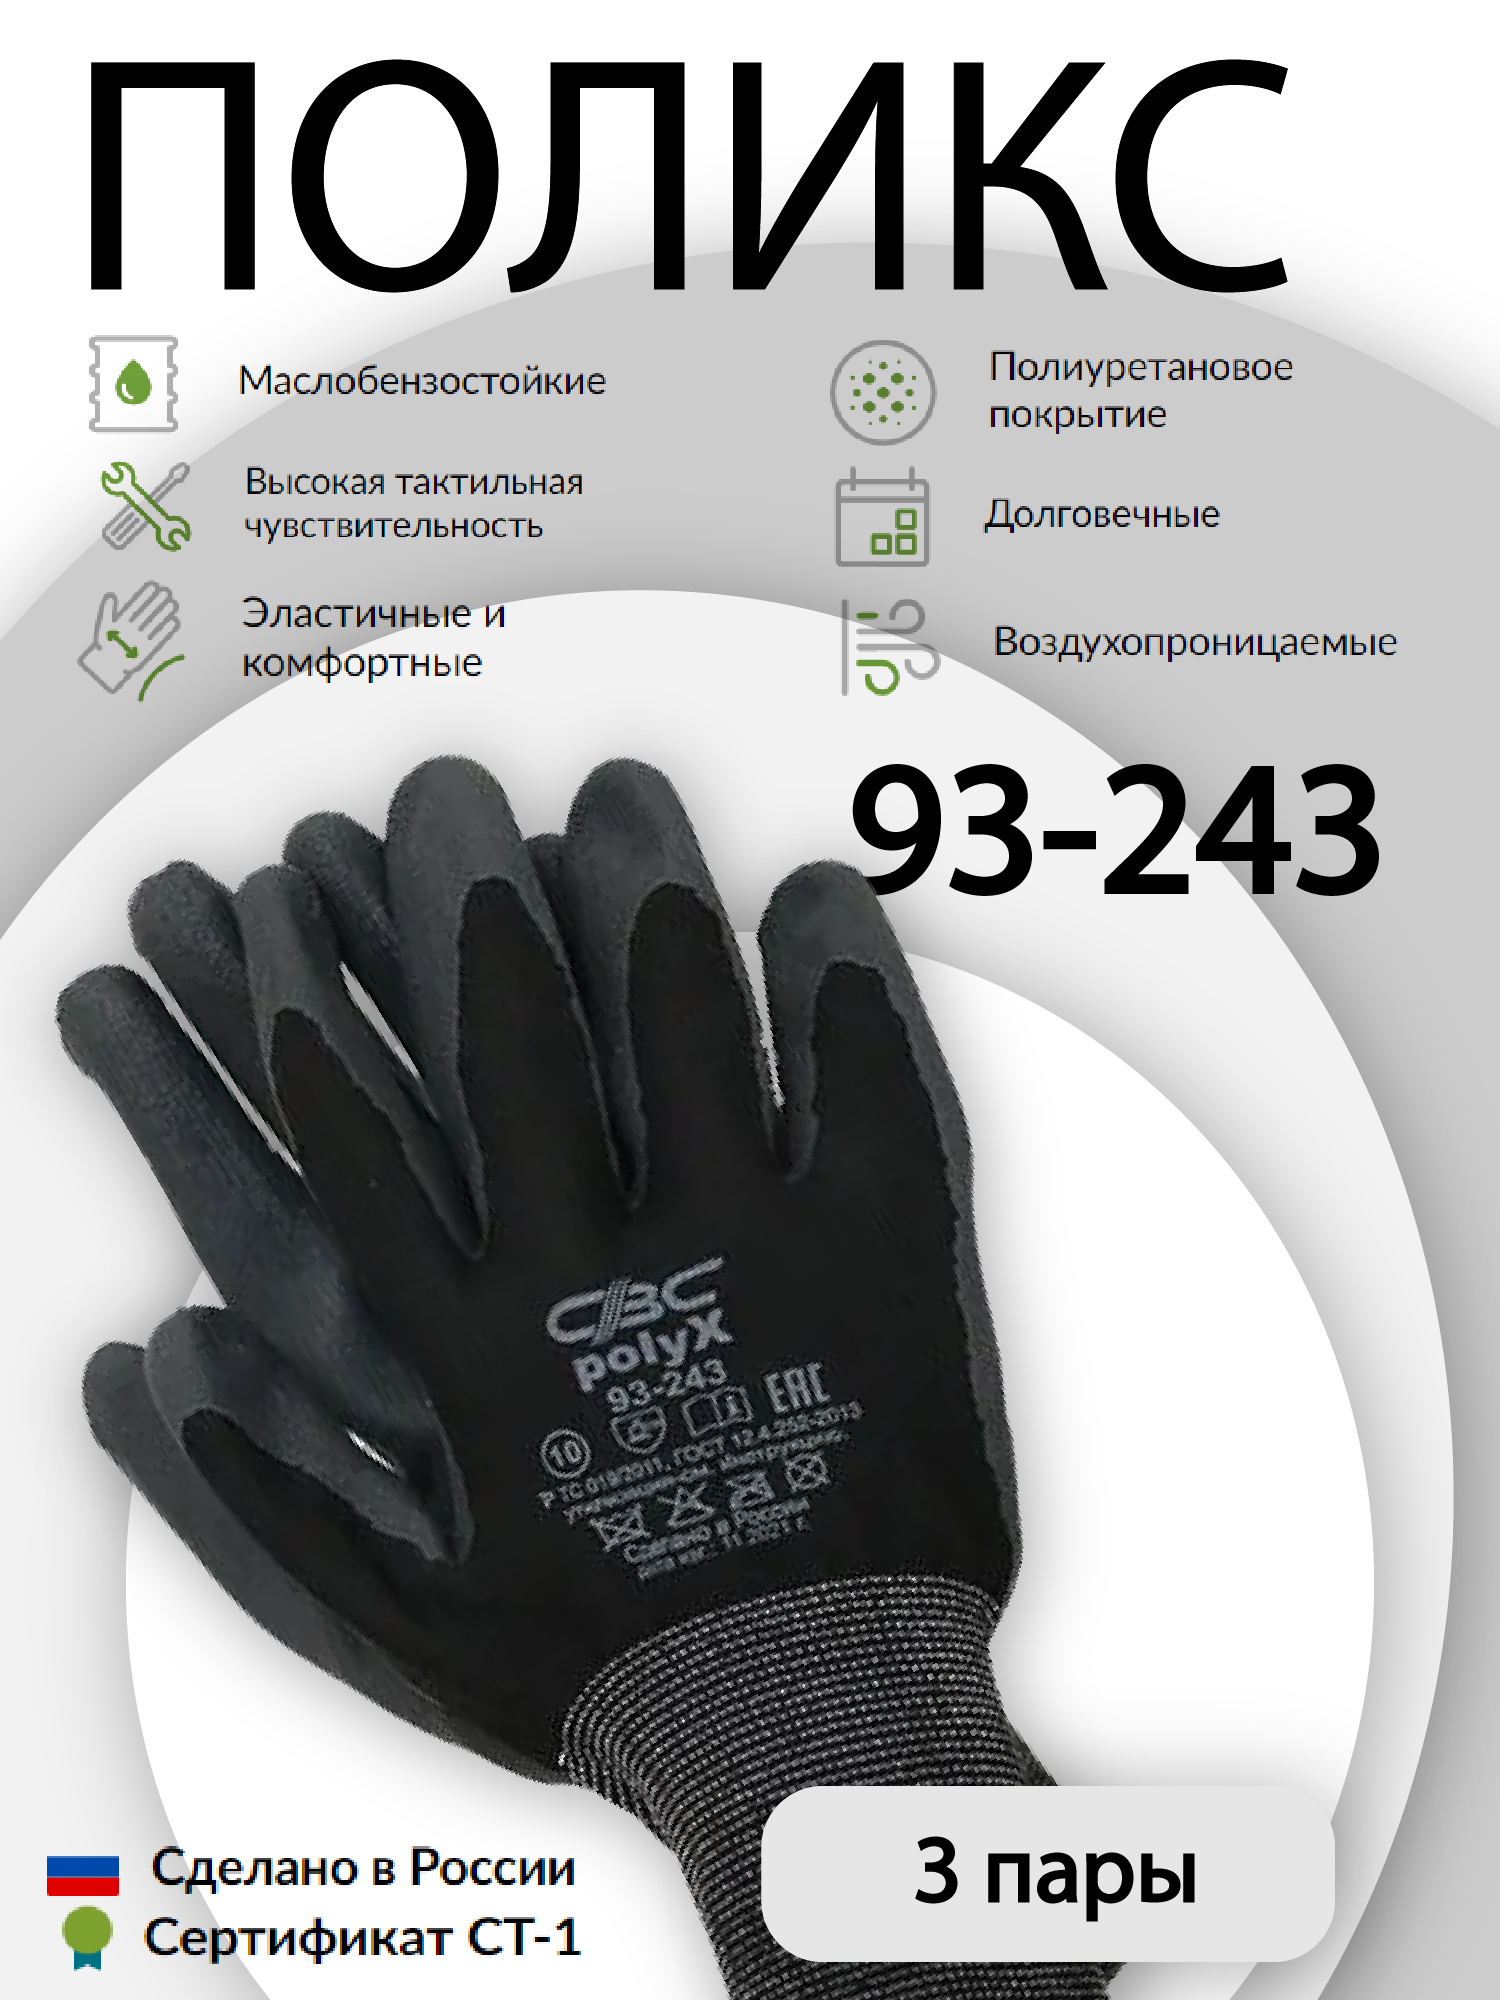 Перчатки защитные СВС ПОЛИКС 93-243 эластичные, с полиуретановым покрытием 3 пары эластичные перчатки механика truper